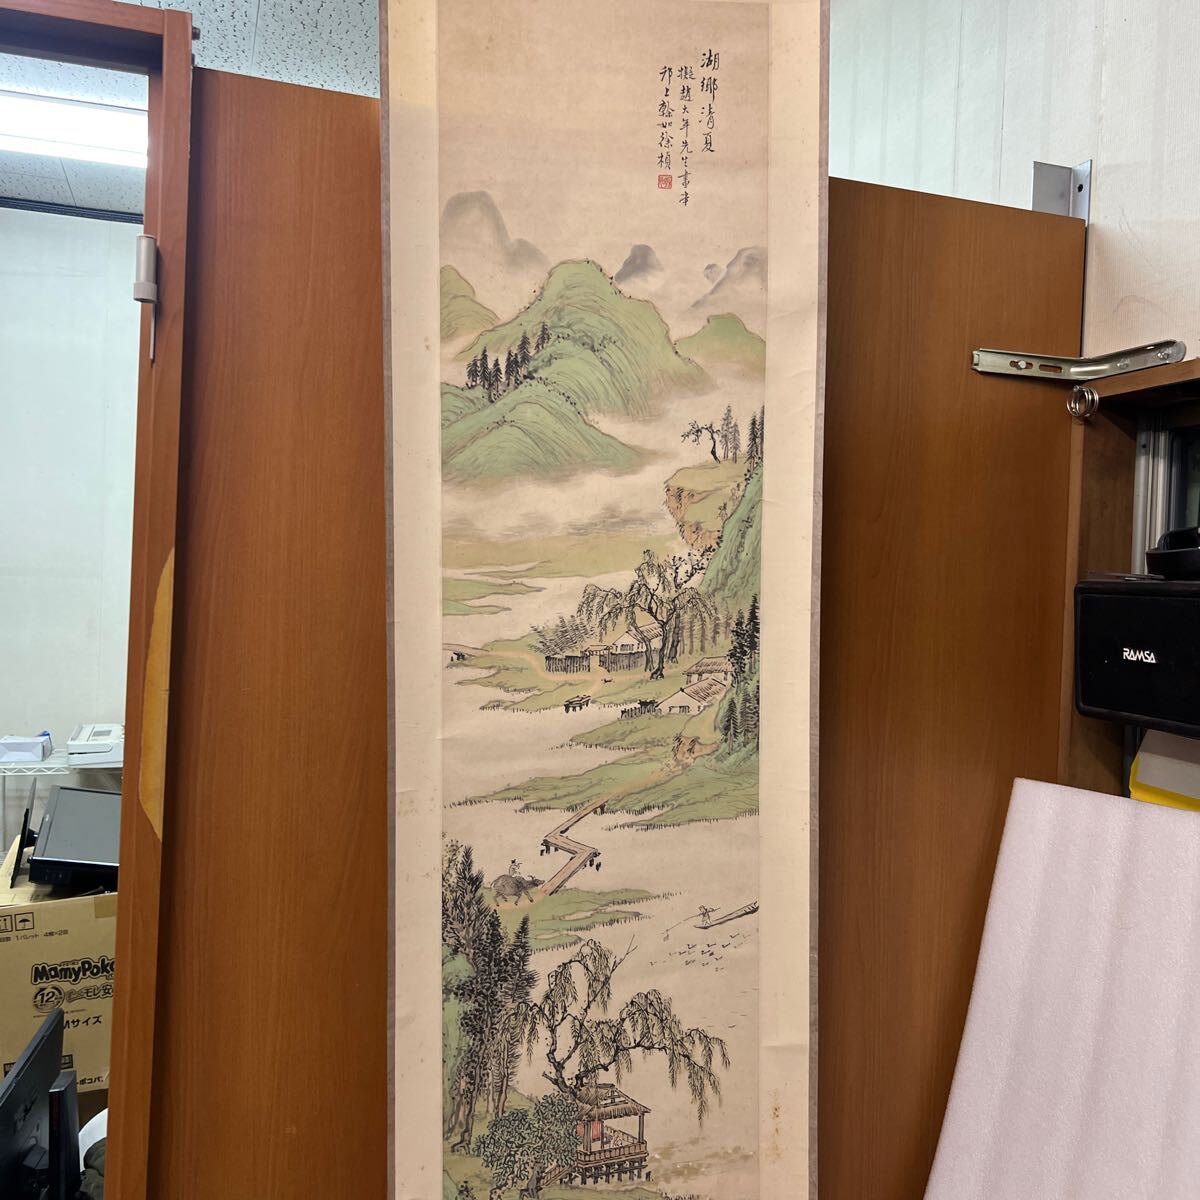 Detalles del pergamino colgante desconocido A4, cuadro, pintura japonesa, paisaje, Fugetsu